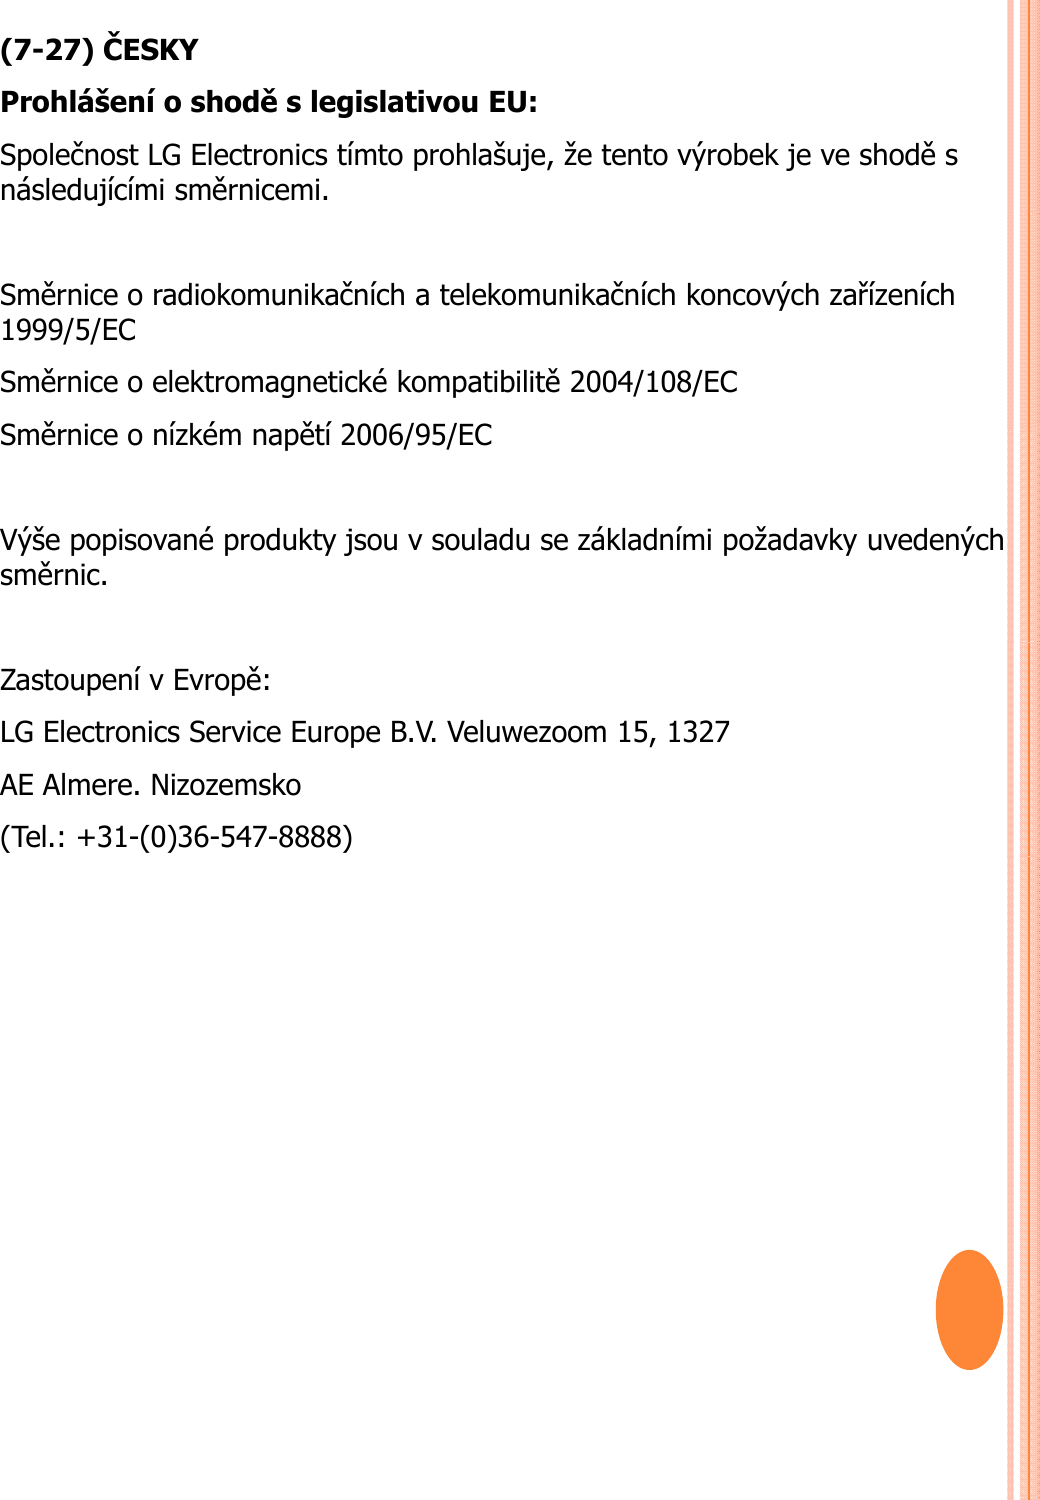 (7-27) ČESKYProhlášení o shoděs legislativou EU: Společnost LG Electronics tímto prohlašuje, že tento výrobek je ve shoděs následujícími směrnicemi. Směrnice o radiokomunikačních a telekomunikačních koncových zařízeních1999/5/EC Směrnice o elektromagnetické kompatibilitě2004/108/EC Sěiíkéětí2006/95/ECSměrnice o nízkémnapětí2006/95/EC Výše popisované produkty jsou v souladu se základními požadavky uvedenýchsměrnic. Zastoupení v Evropě: LG Electronics Service Europe B.V. Veluwezoom 15, 1327 AE Almere. Nizozemsko(Tel.: +31-(0)36-547-8888)